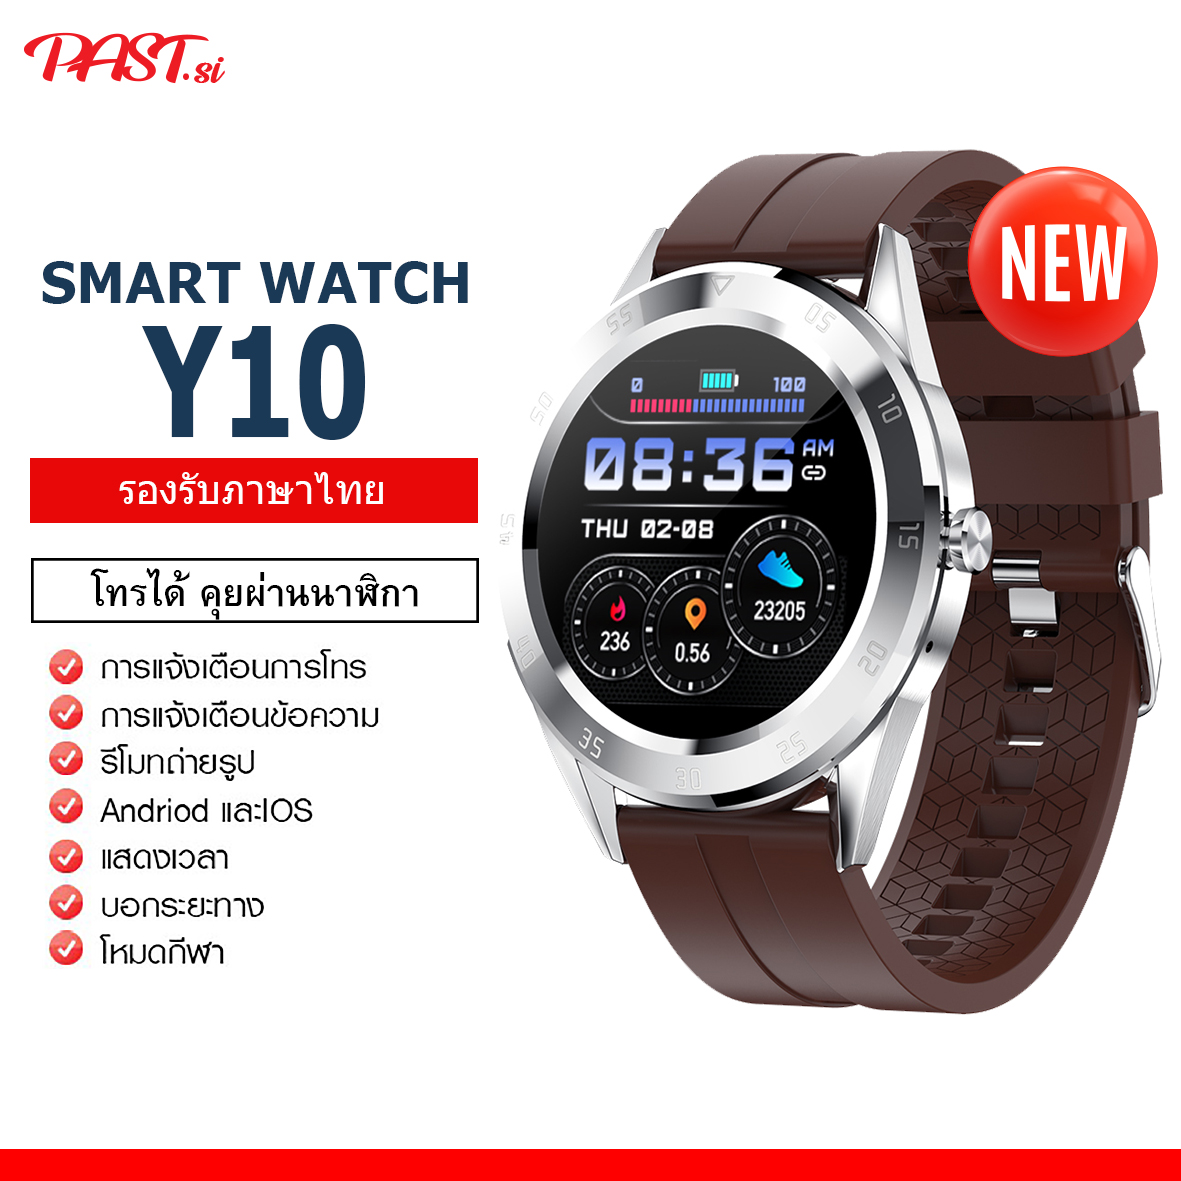 [สินค้าพร้อมส่งในไทย] smart watch Y10 ใหม่ล่าสุด โทรได้ รับสายได้  คุยผ่านนาฬิกา นาฬิกาอัจฉริยะ (ภาษาไทย) แจ้งเตือนภาษาไทย ทัสกรีน สมาร์ทวอทช์ นาฬิกา นาฬิกาข้อมือ วัดชีพจร ความดัน นับก้าว มีประกัน ของแท้100% เปลี่ยนรูปหน้าจอ มีบริการเก็บเงินปลายทาง